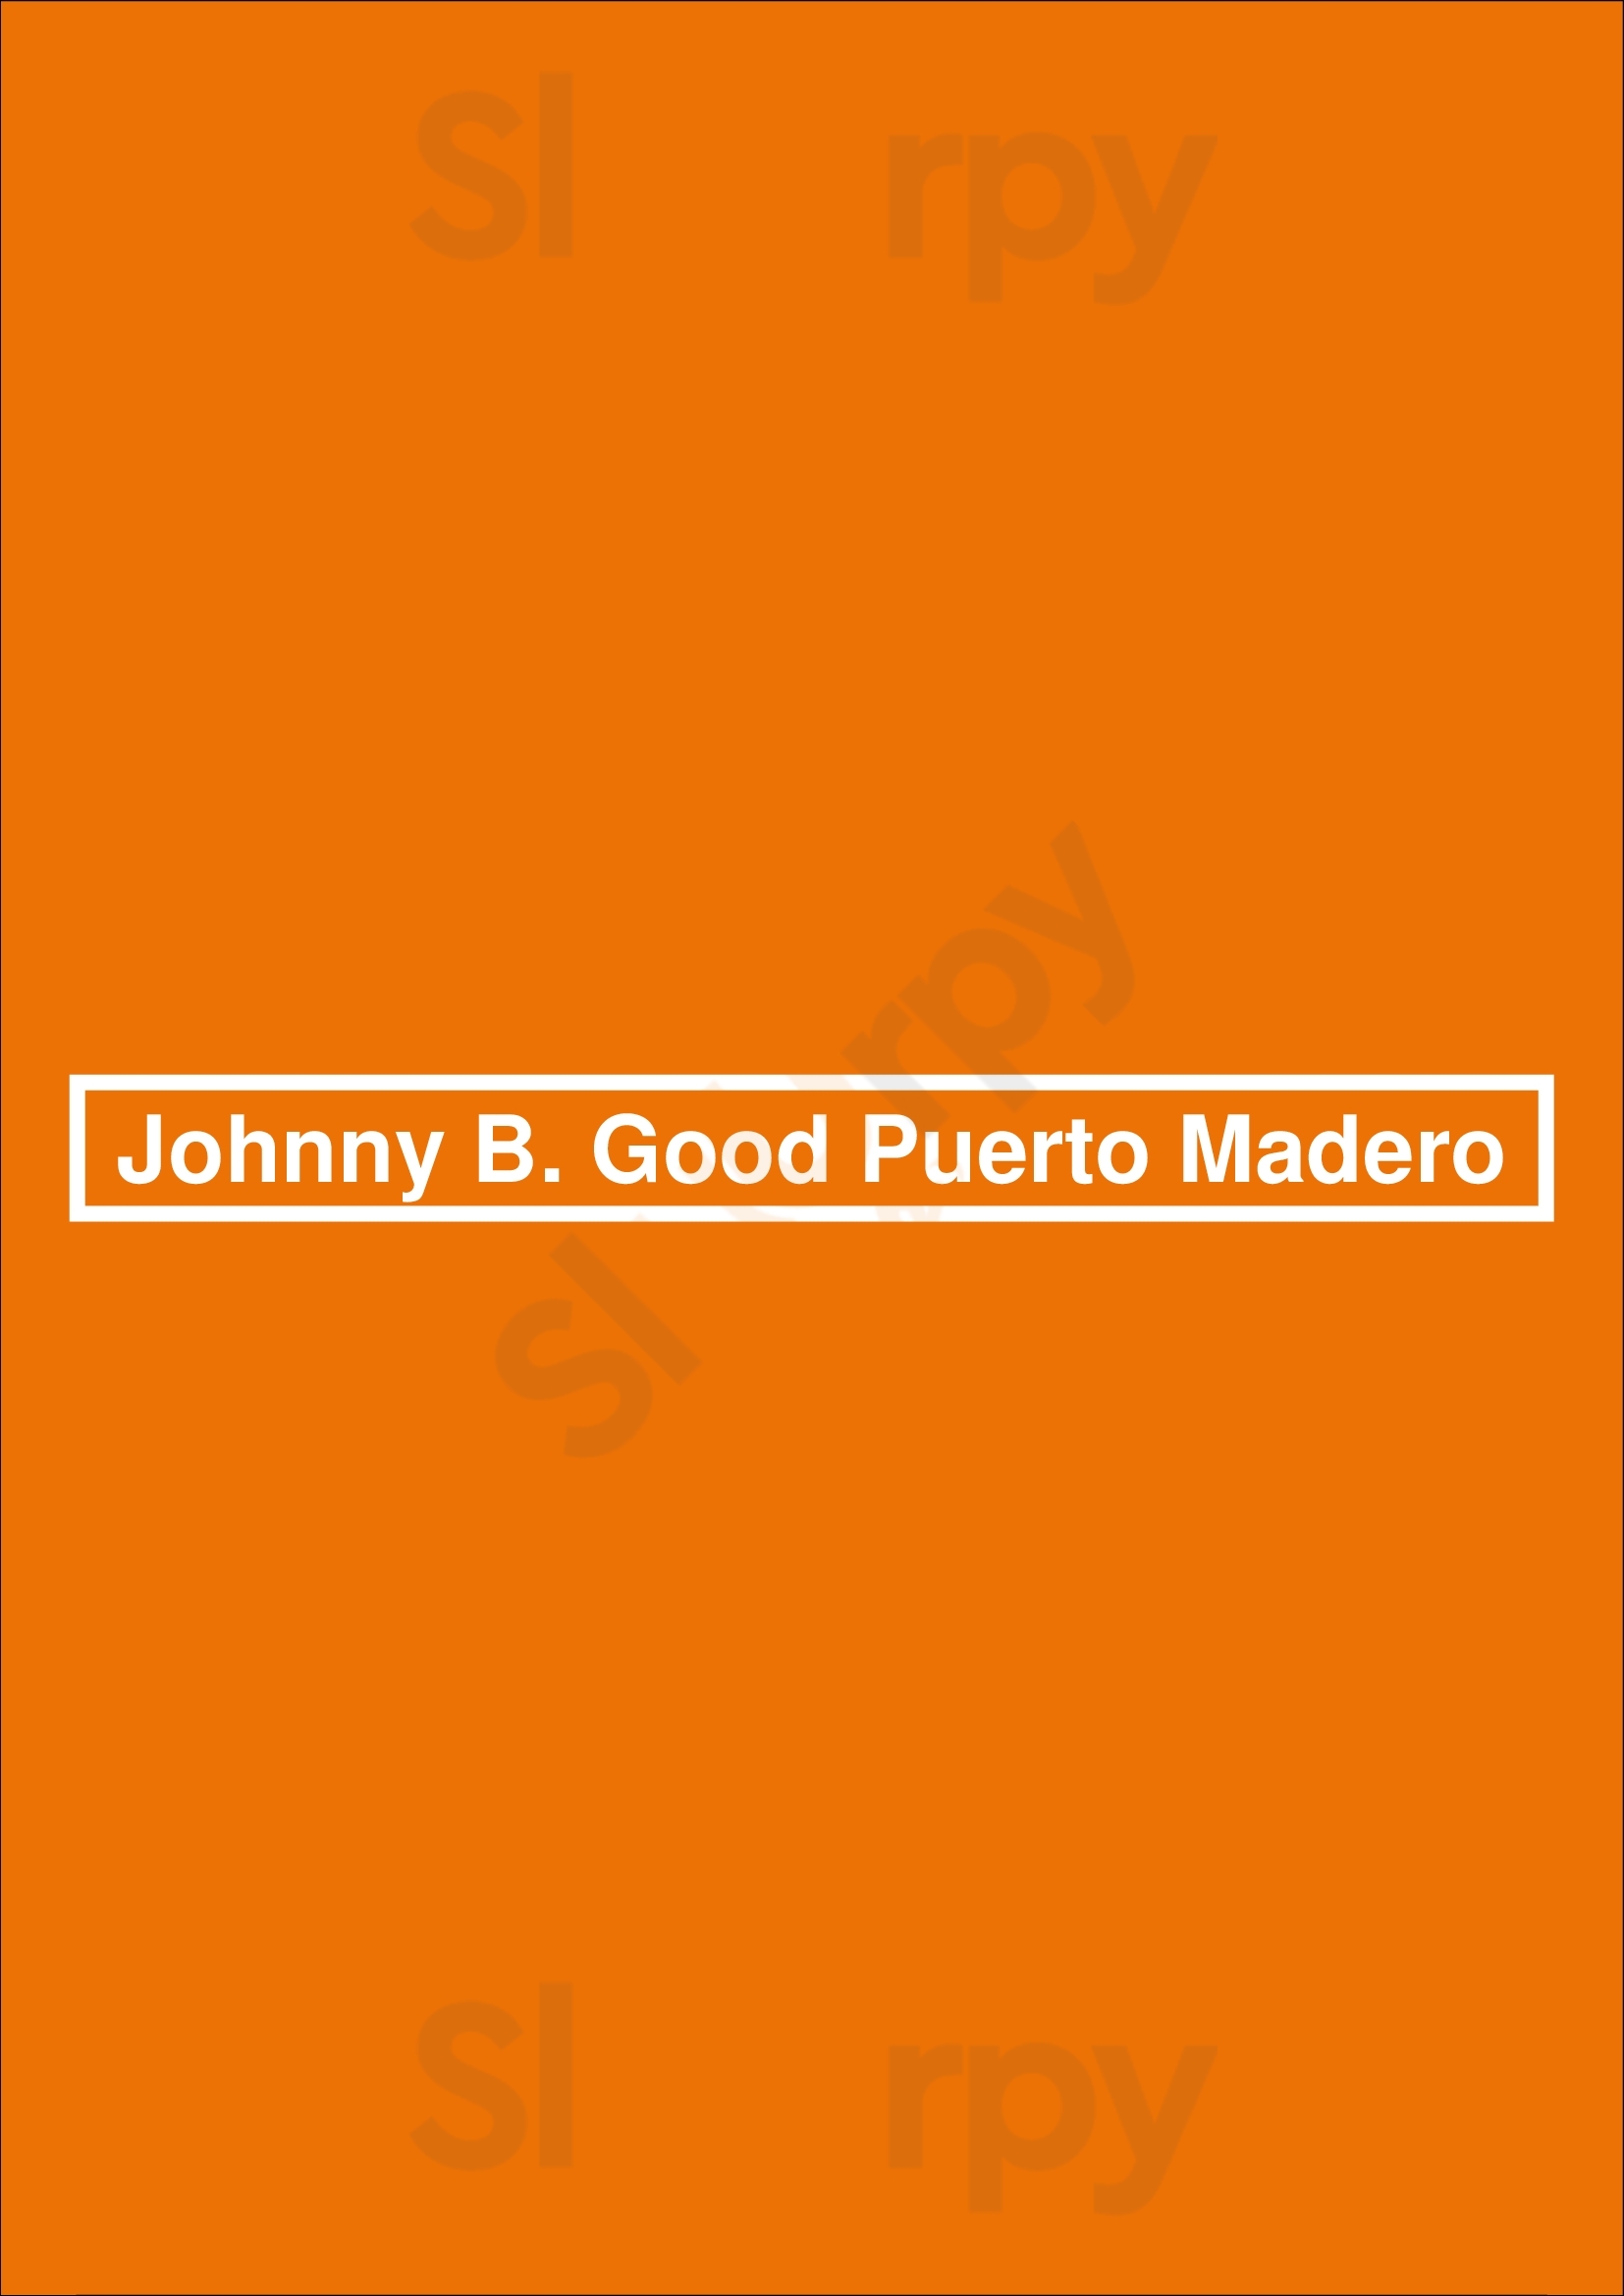 Johnny B. Good Puerto Madero Buenos Aires Menu - 1